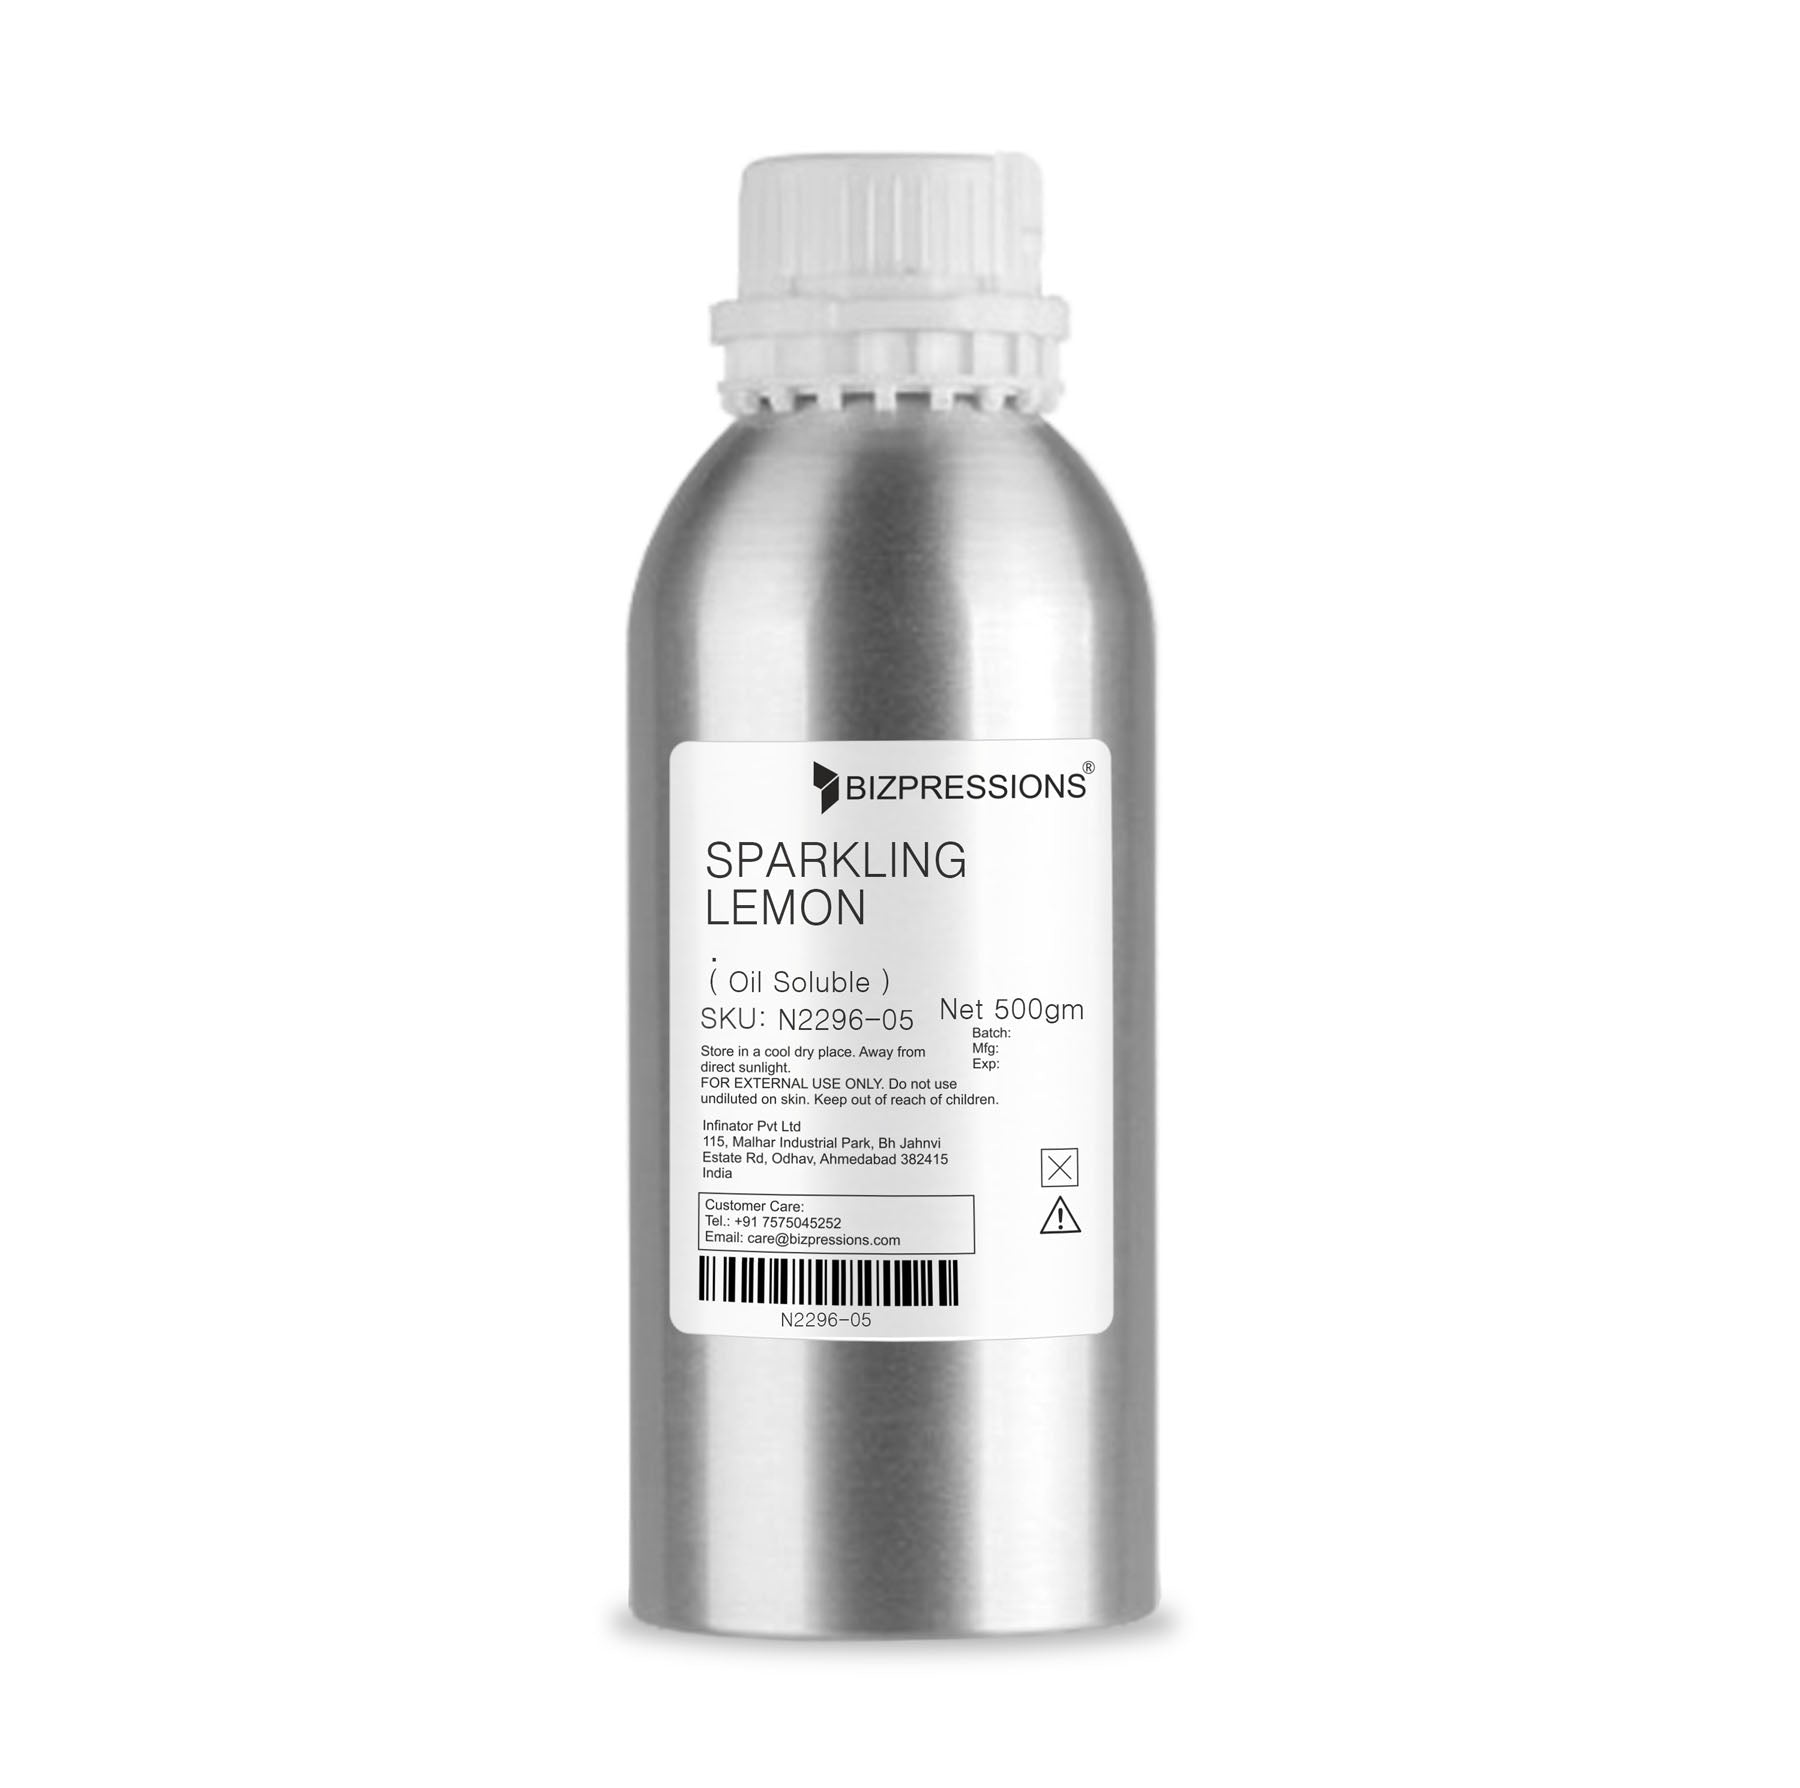 SPARKLING LEMON - Fragrance ( Oil Soluble ) - 500 gm